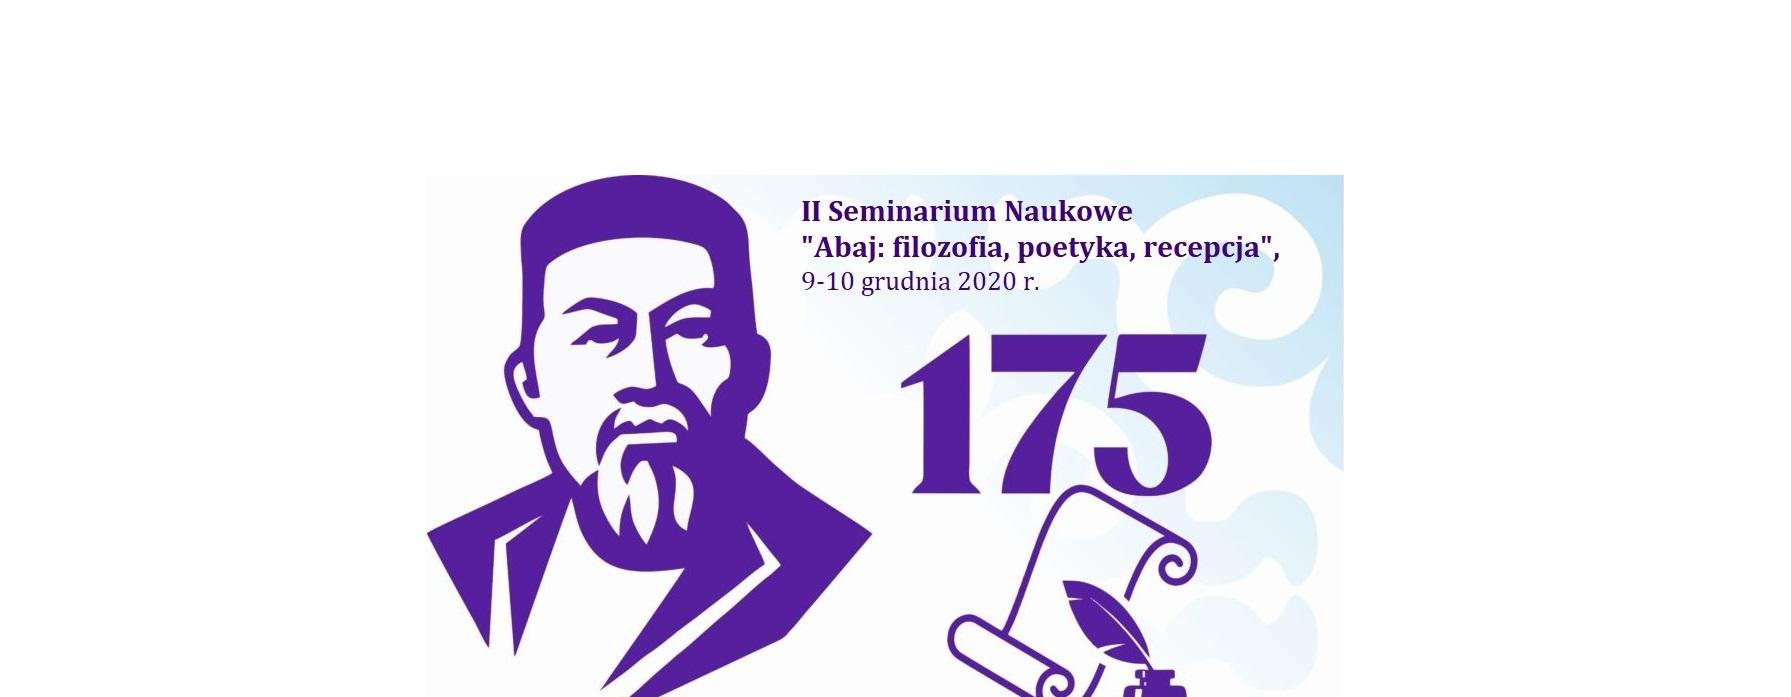 II Międzynarodowe Seminarium Naukowe  „Abaj: filozofia, poetyka, recepcja”, poświęcone 175 rocznicy urodzin wybitnego kazachskiego poety, filozofa, tłumacza, kompozytora i krzewiciela oświaty Abaja Kunanbajuły